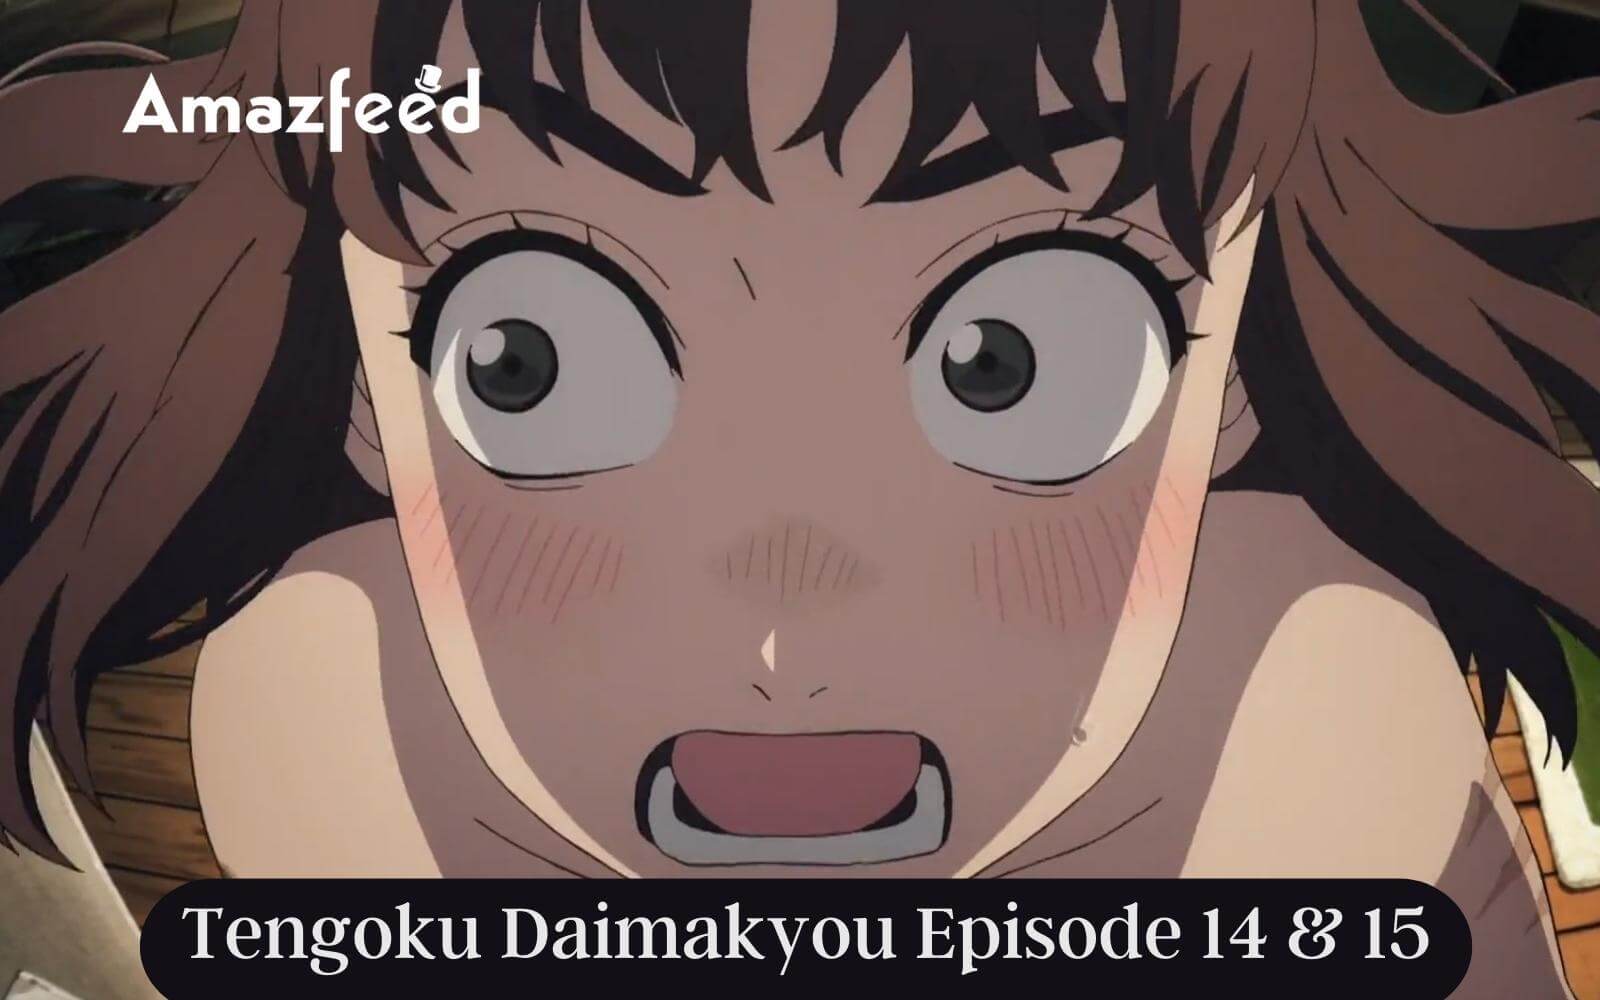 Tengoku Daimakyou episode 6 release time and date countdown